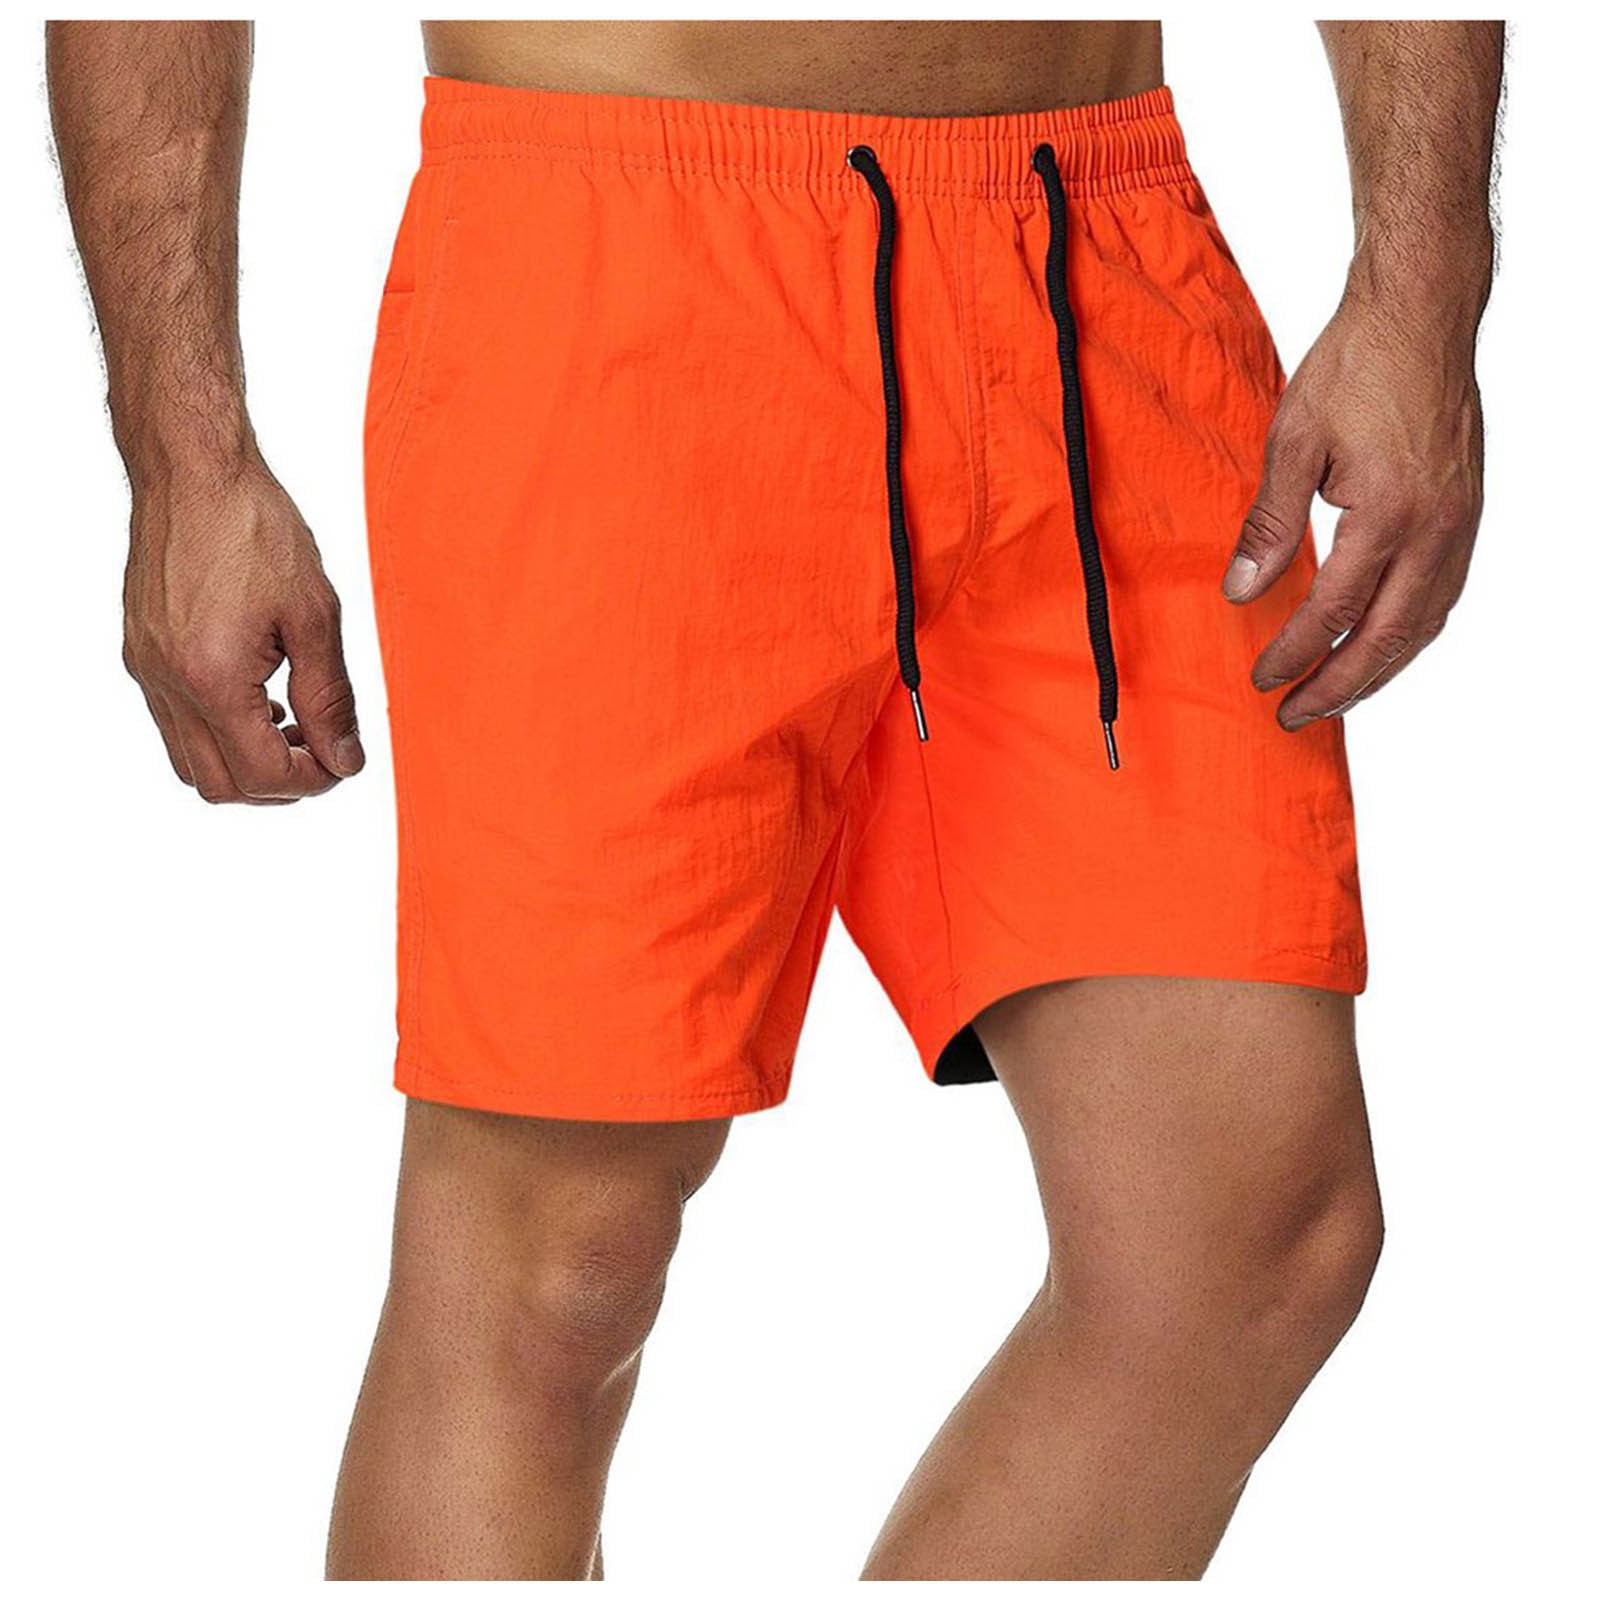 Orangetheory Athletic Shorts for Men - Poshmark